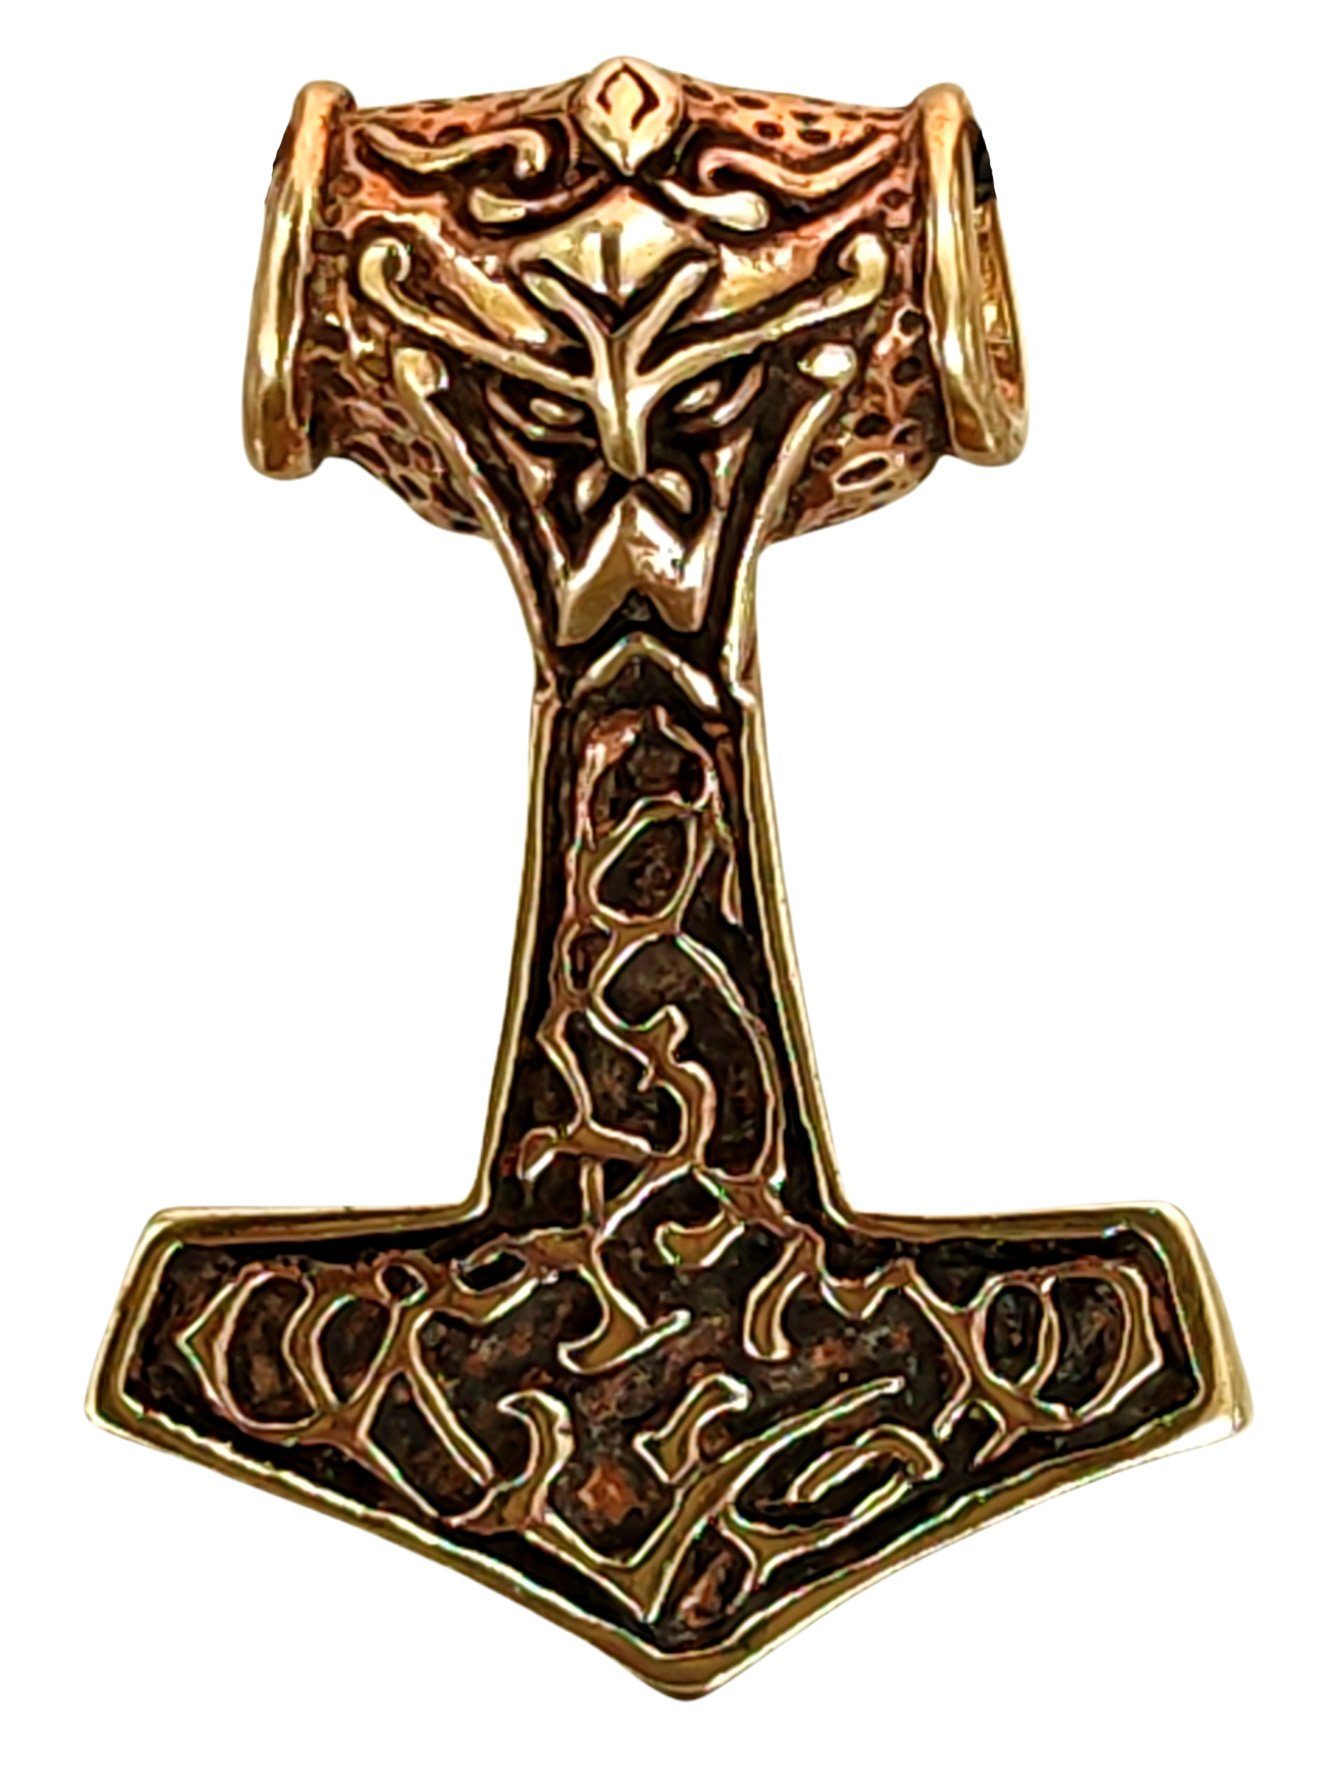 Thorshammer Leather Thoranhänger Bronze Wikinger Mjölnir Kettenanhänger Nordisch Thor of Kiss